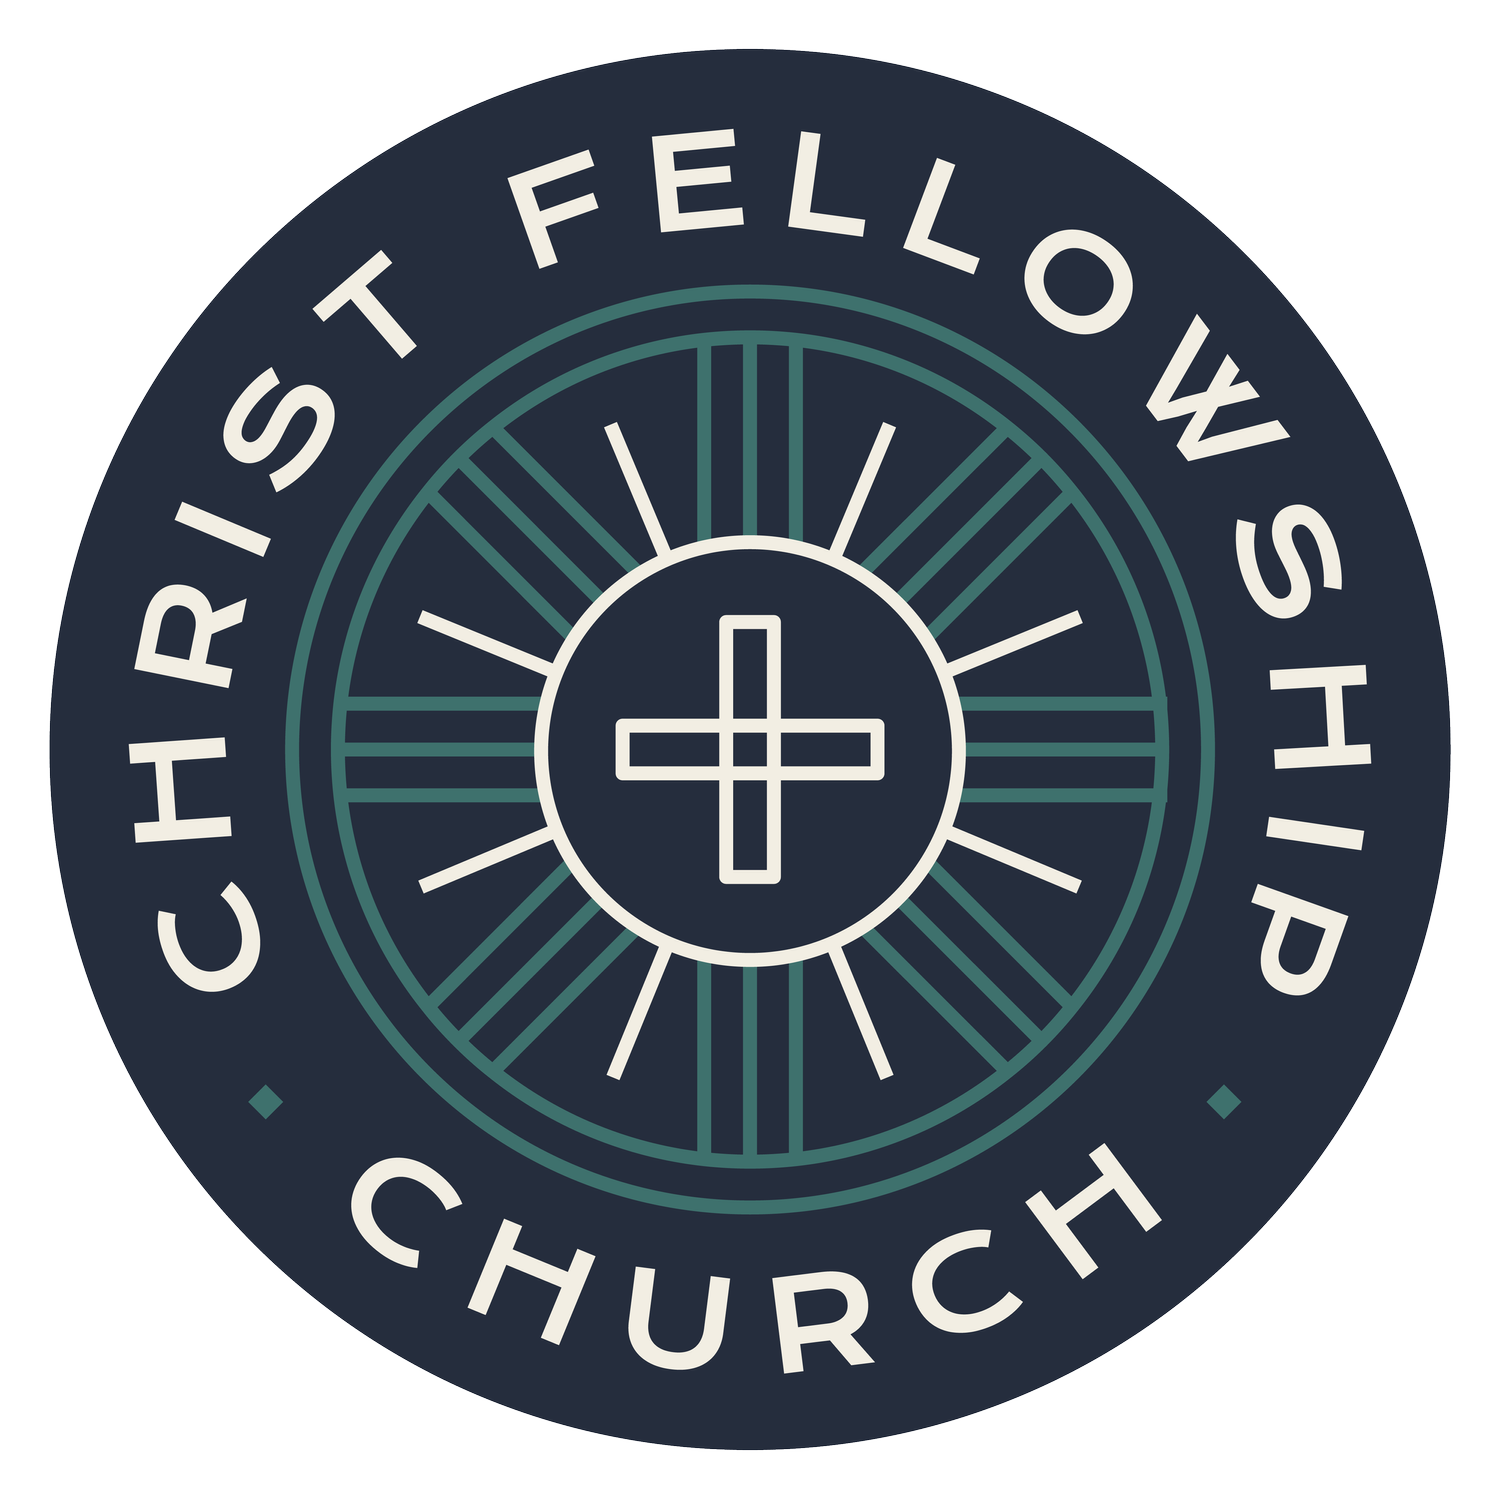 Christ Fellowship Church St. Louis